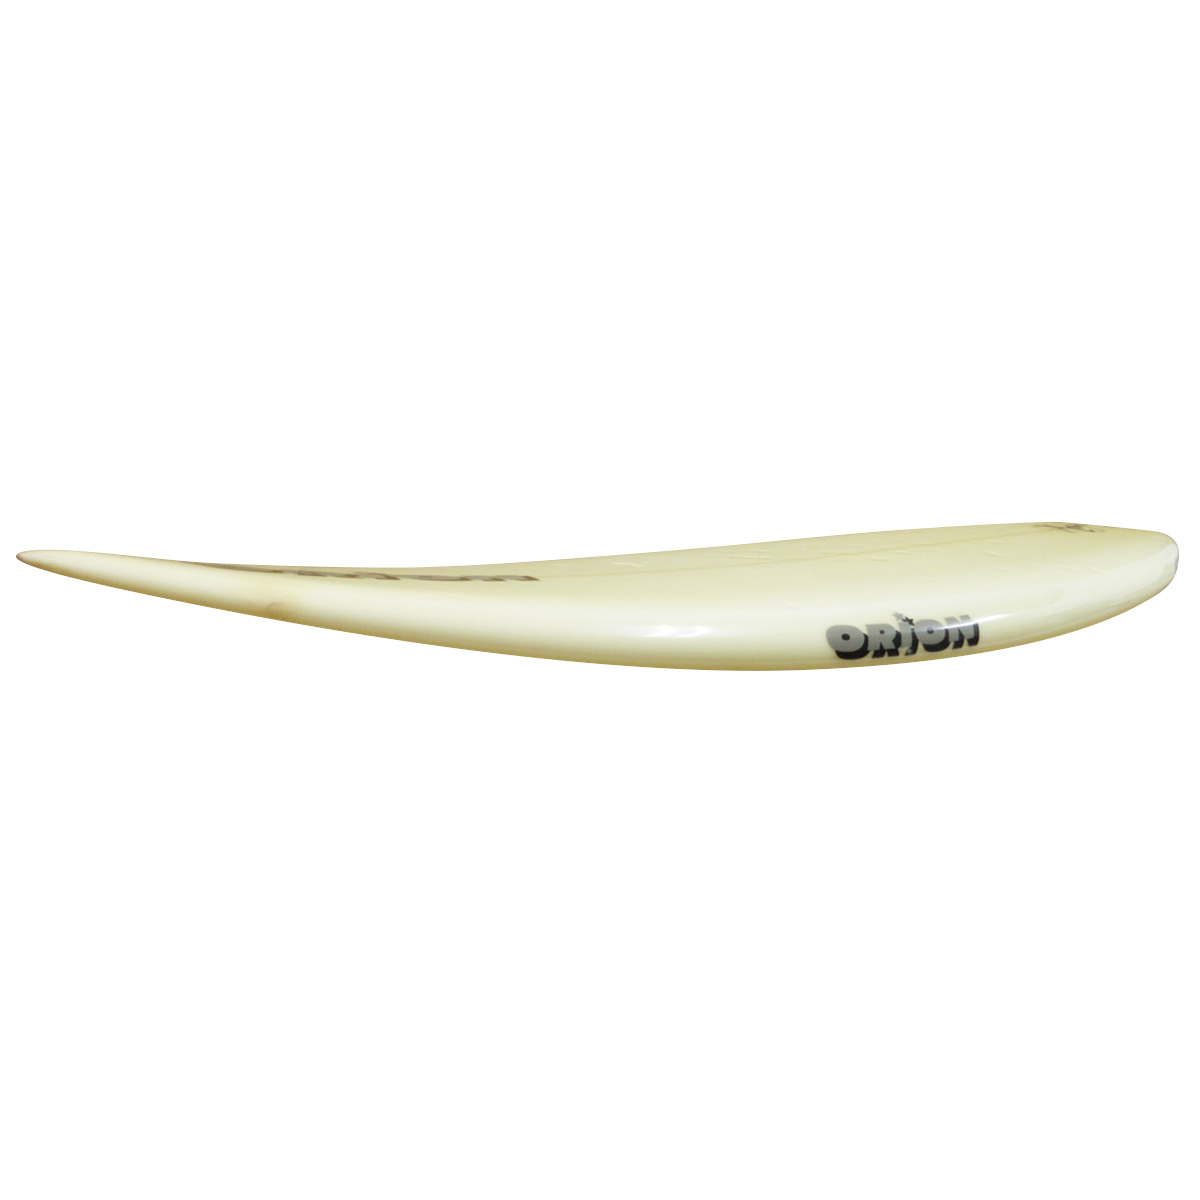 ORION SURF CRAFT / VINTAGE THRUSTER 5`10